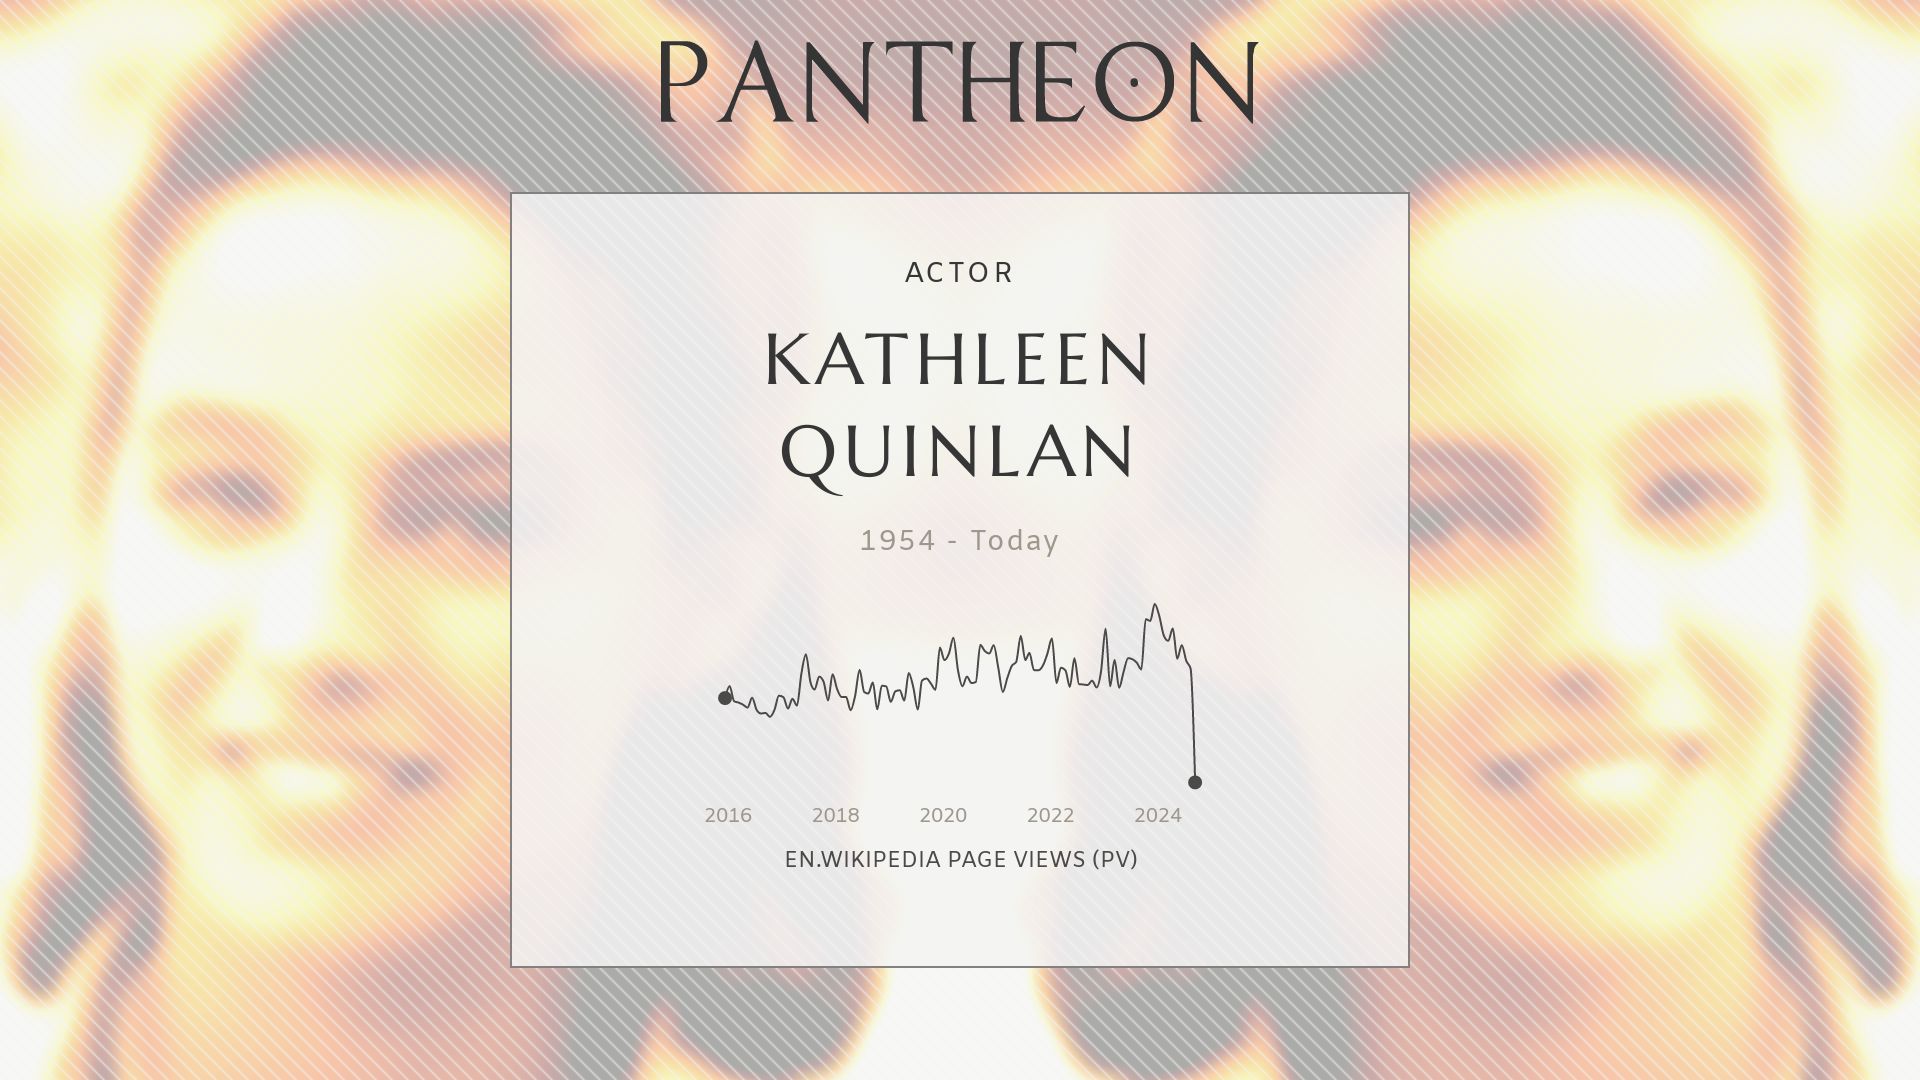 Kathleen Quinlan Biography - American actress Pantheon